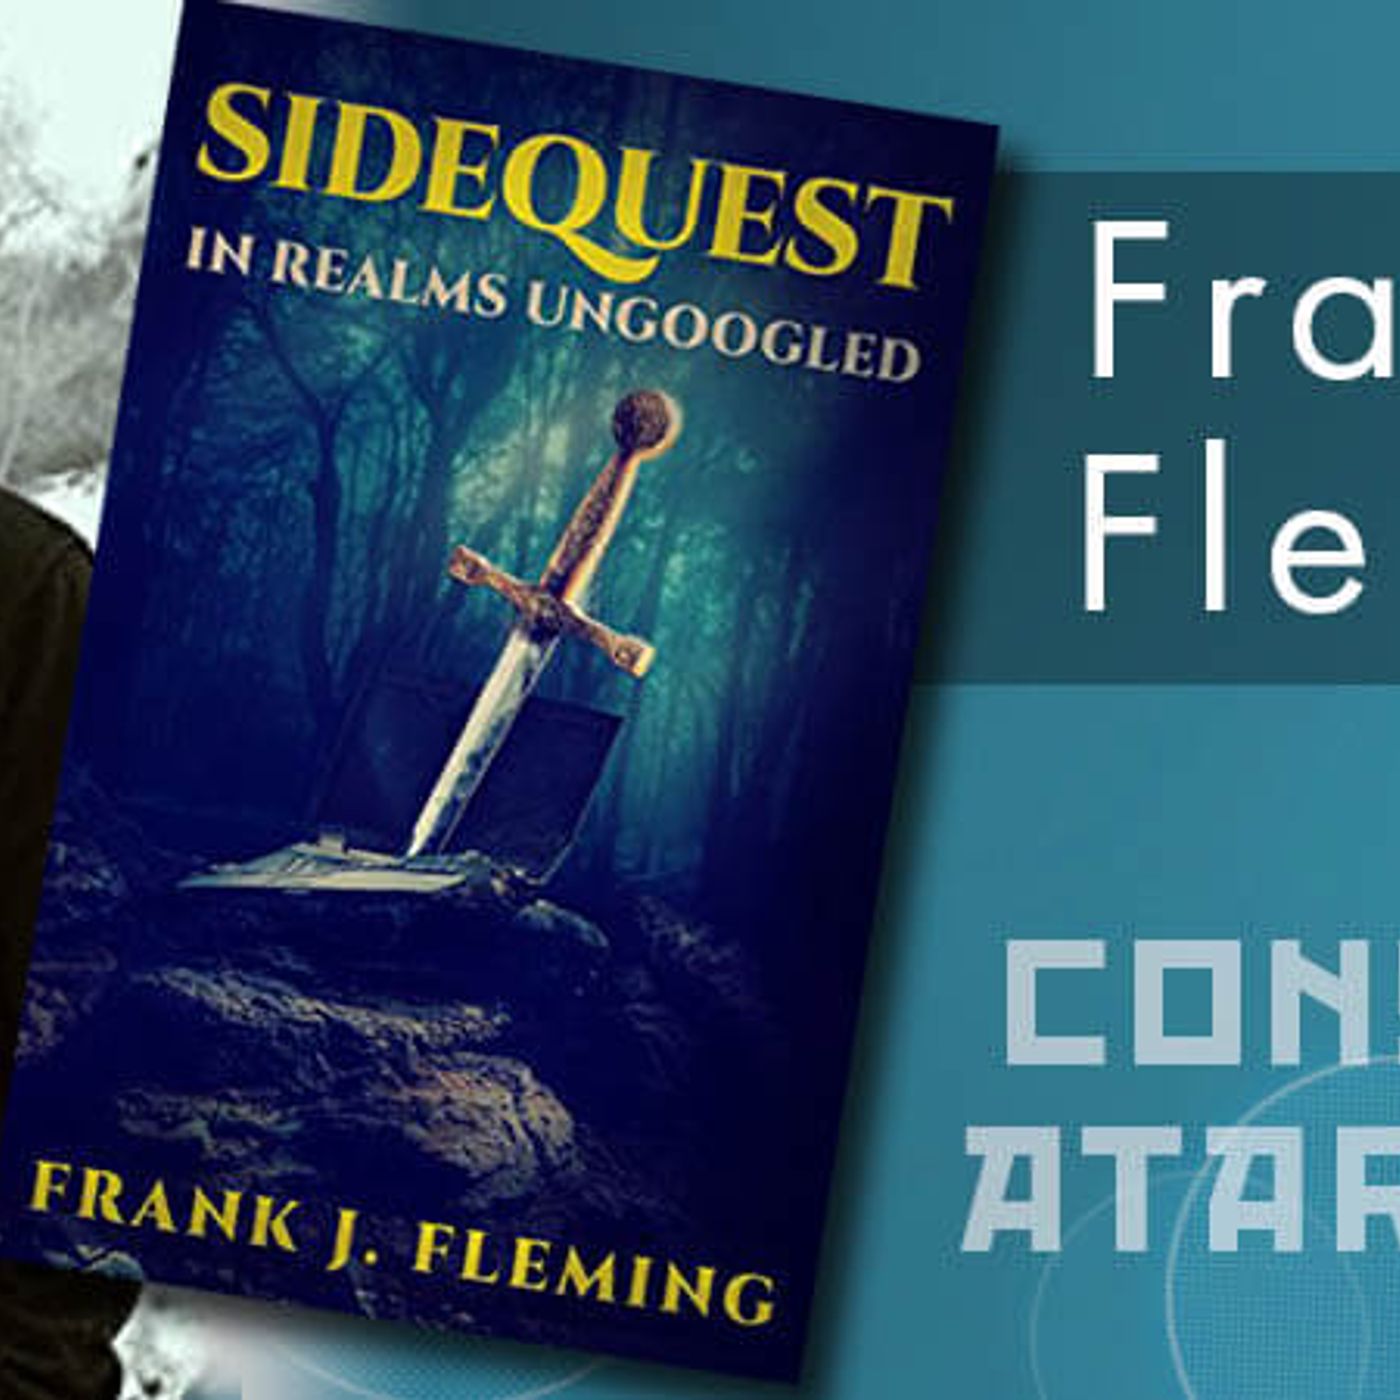 Frank J. Fleming's Sidequest